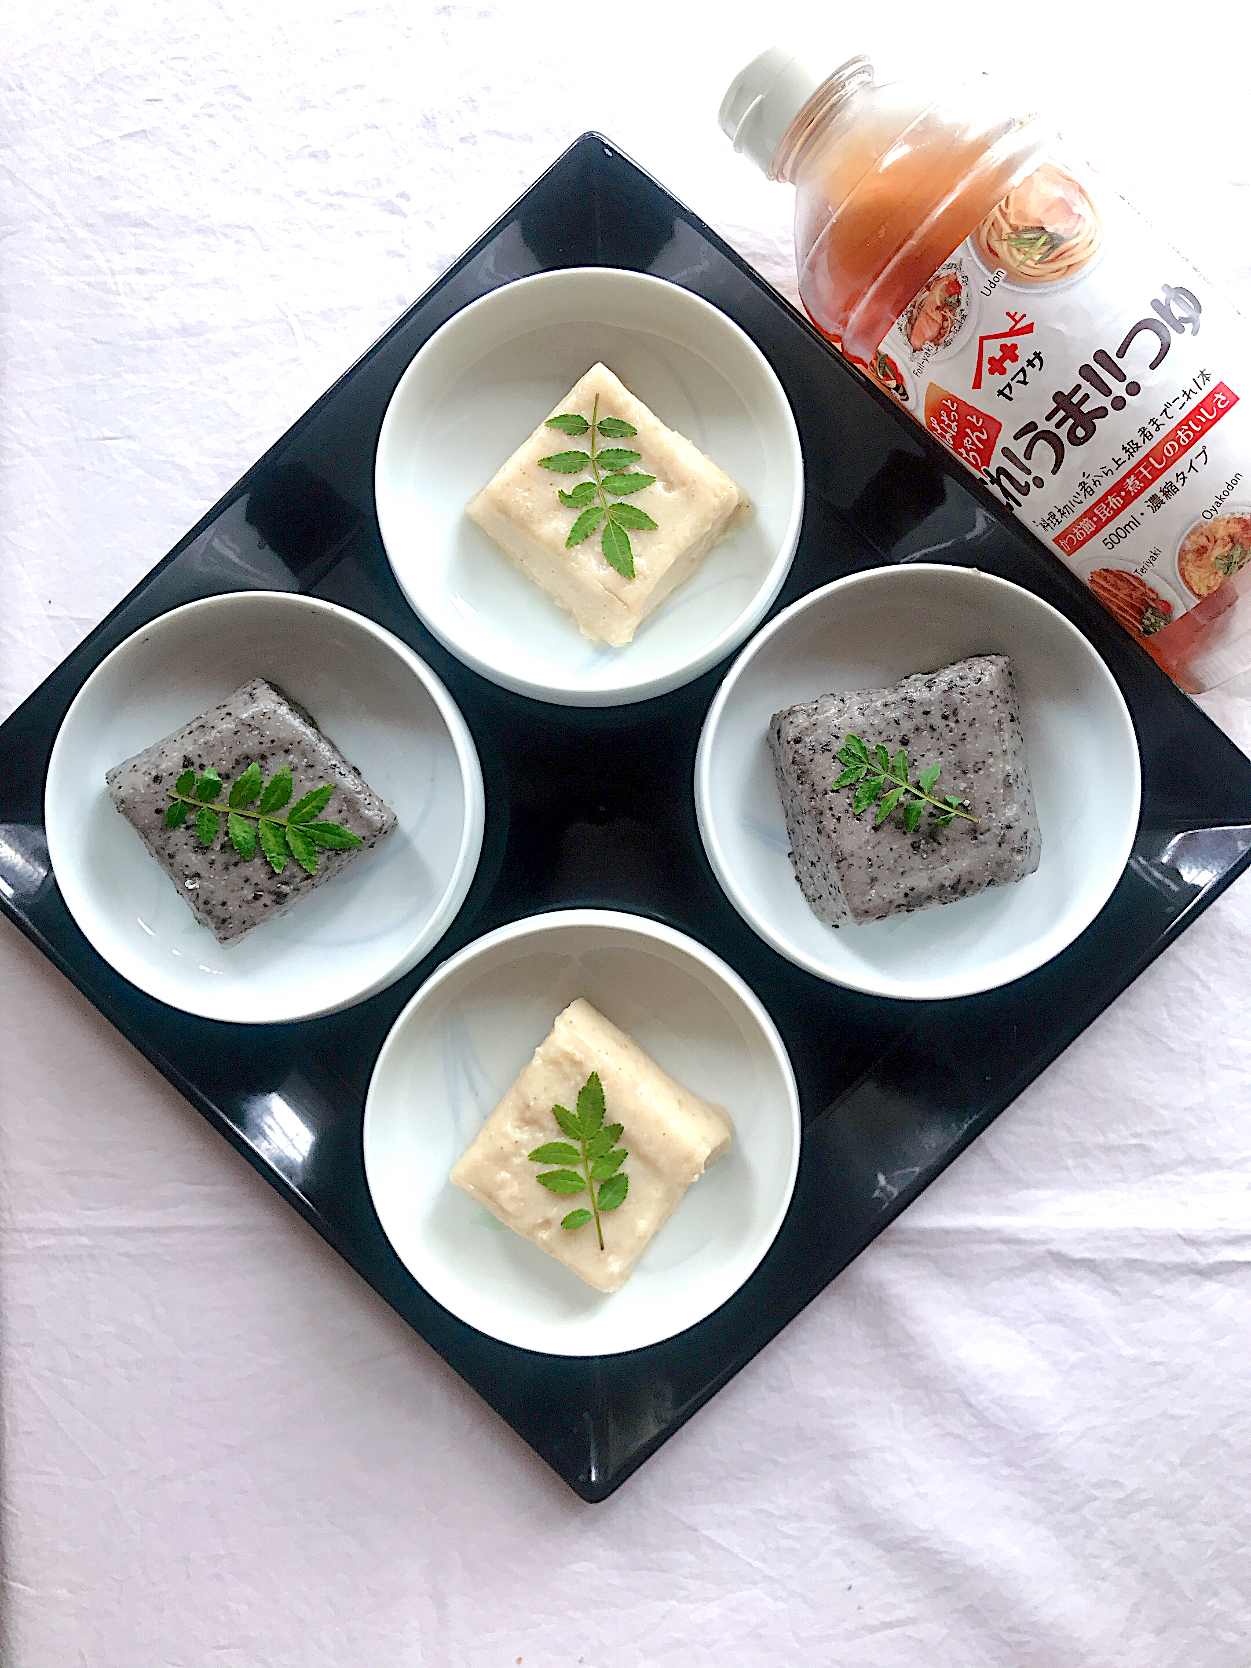 ぱぱっと簡単5分で出来る 材料4つのもちっと美味しい胡麻豆腐/とんちん | SnapDish[スナップディッシュ] (ID:WerP1a)